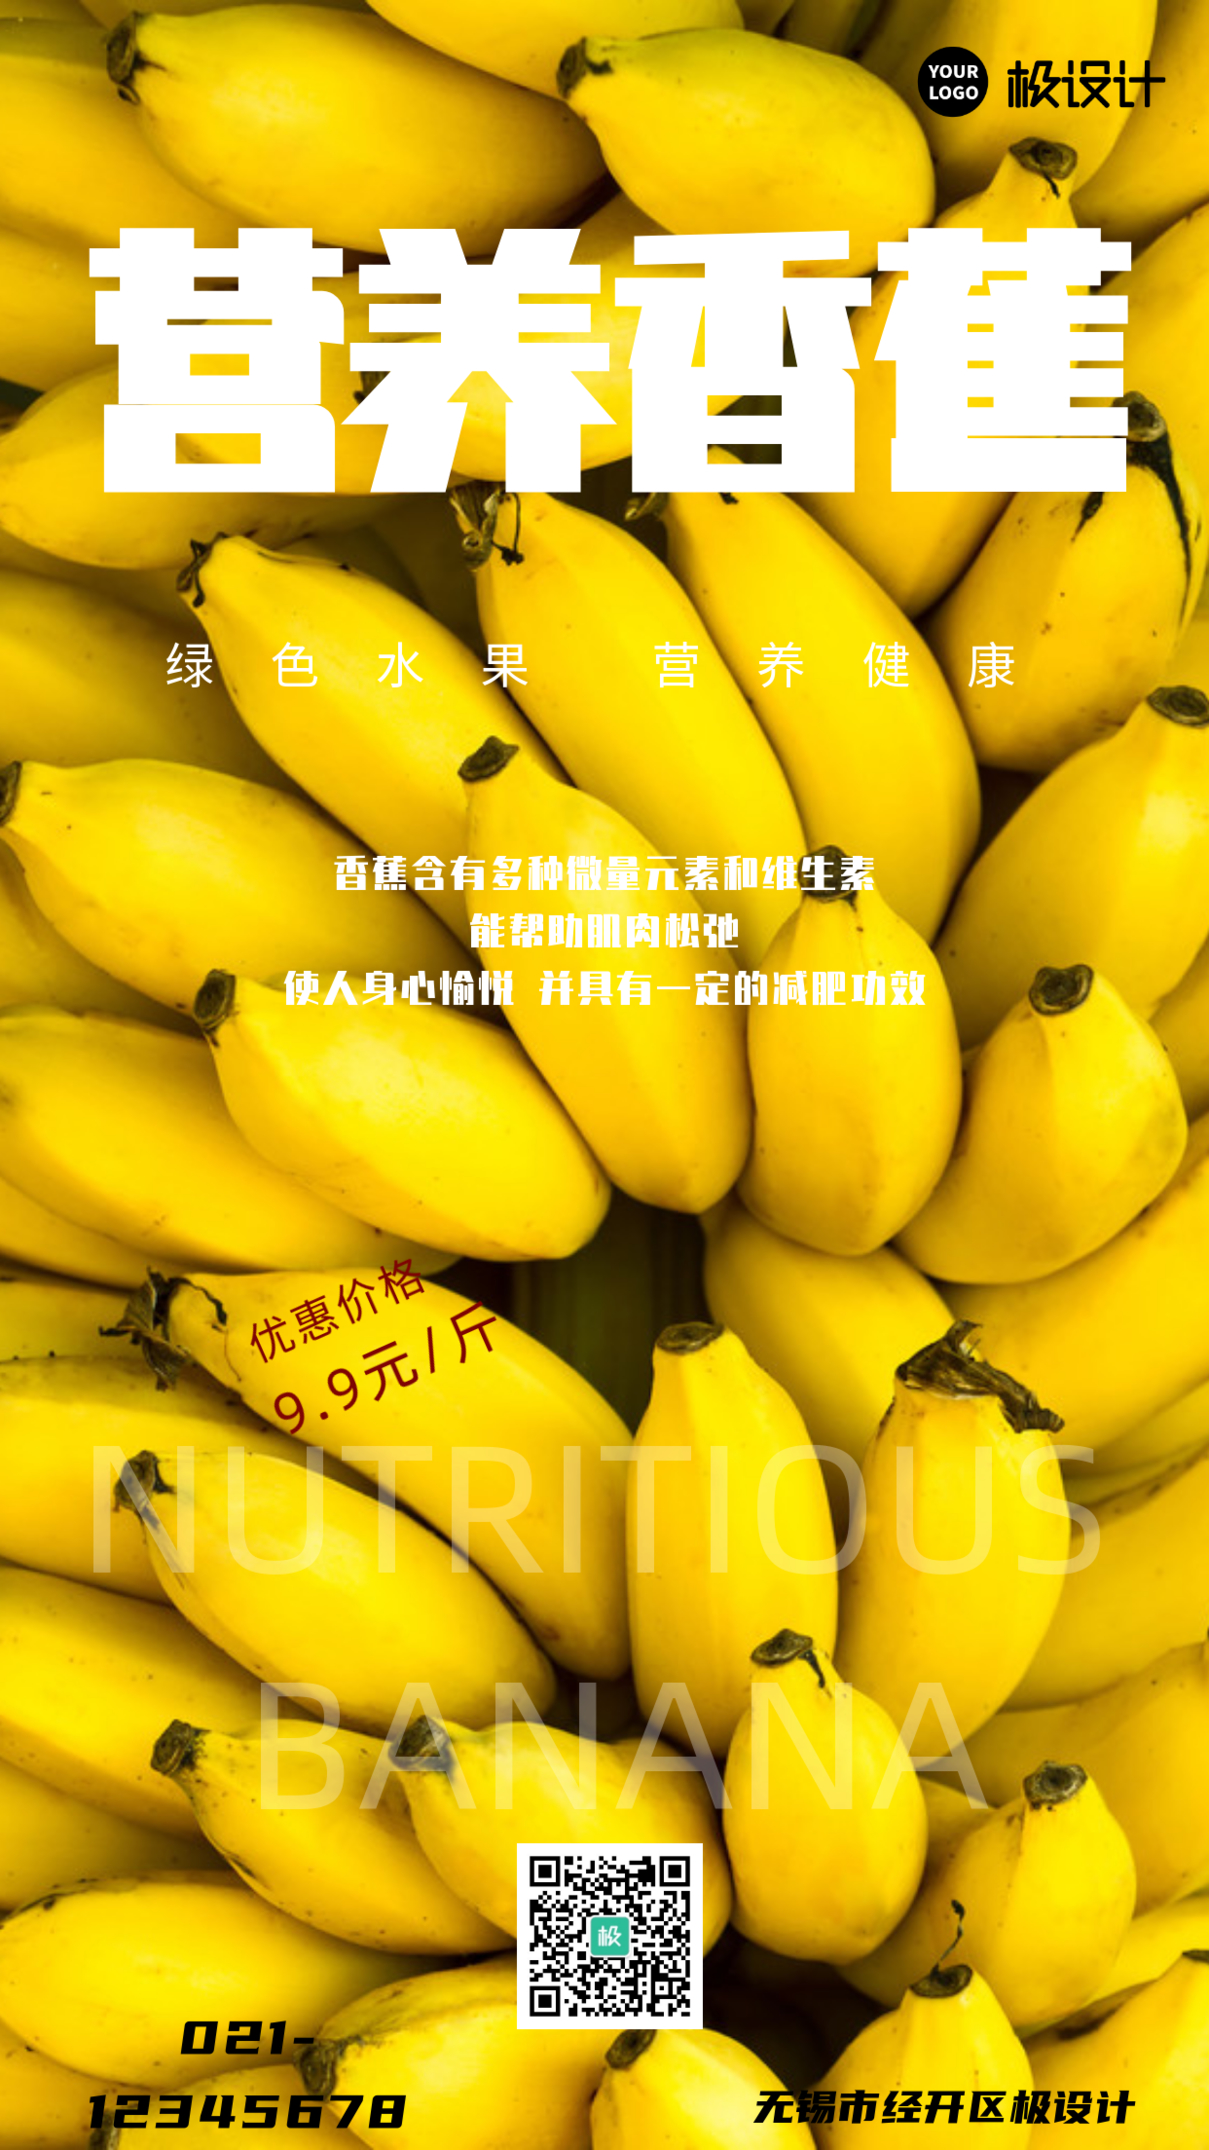 创意简约香蕉宣传美食手机营销海报